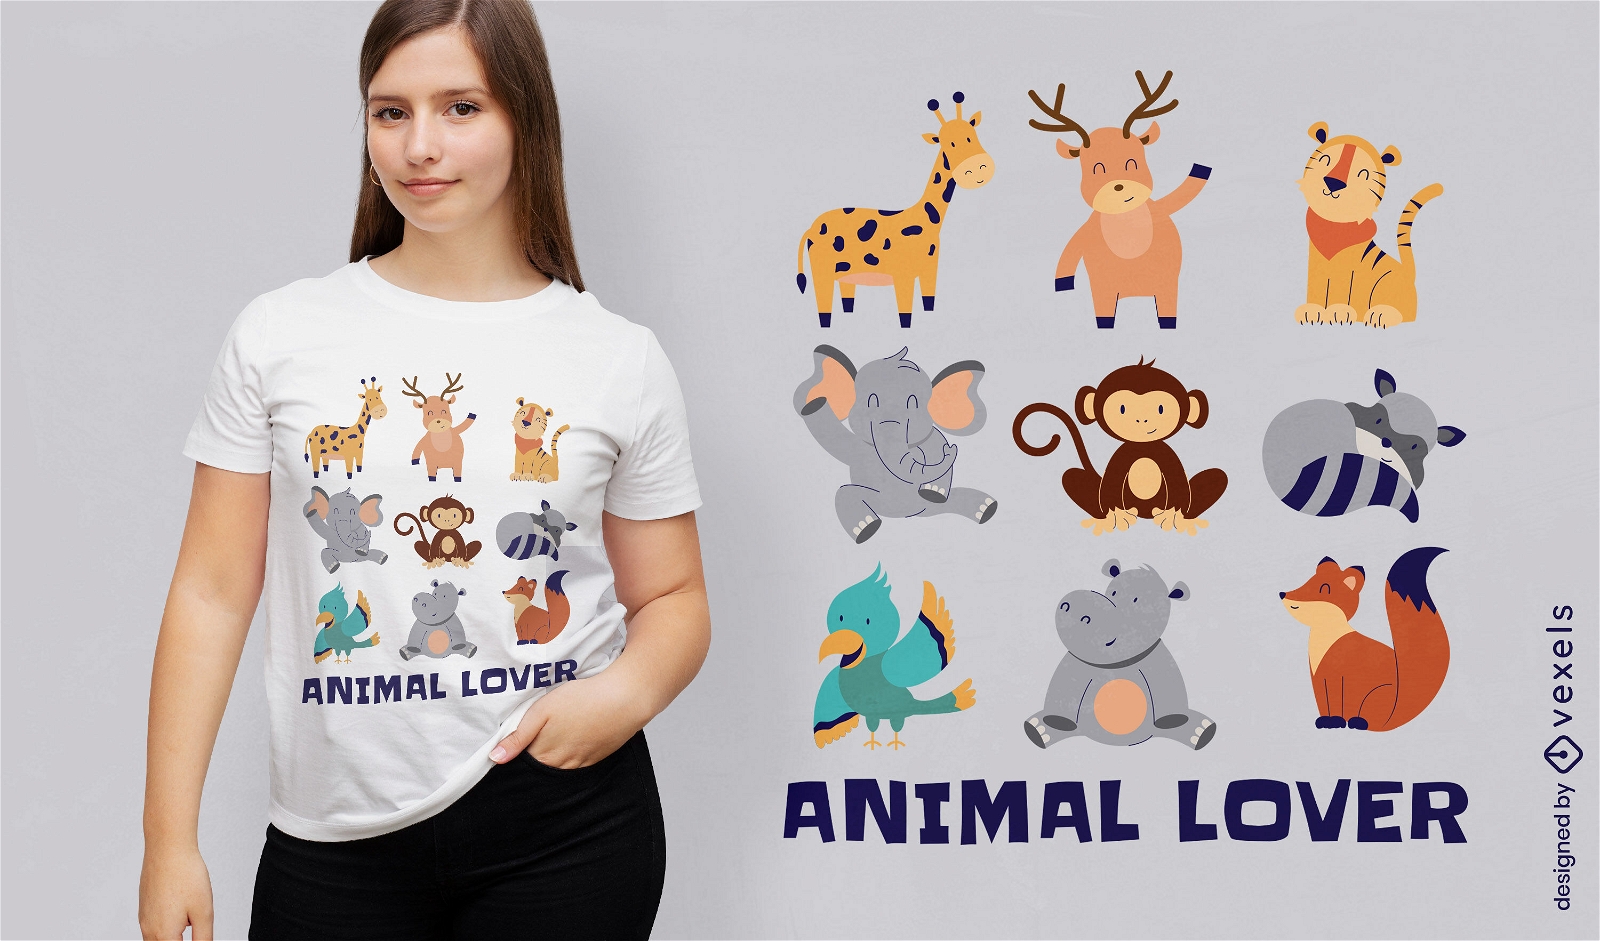 Dise?o de camiseta amante de los animales.